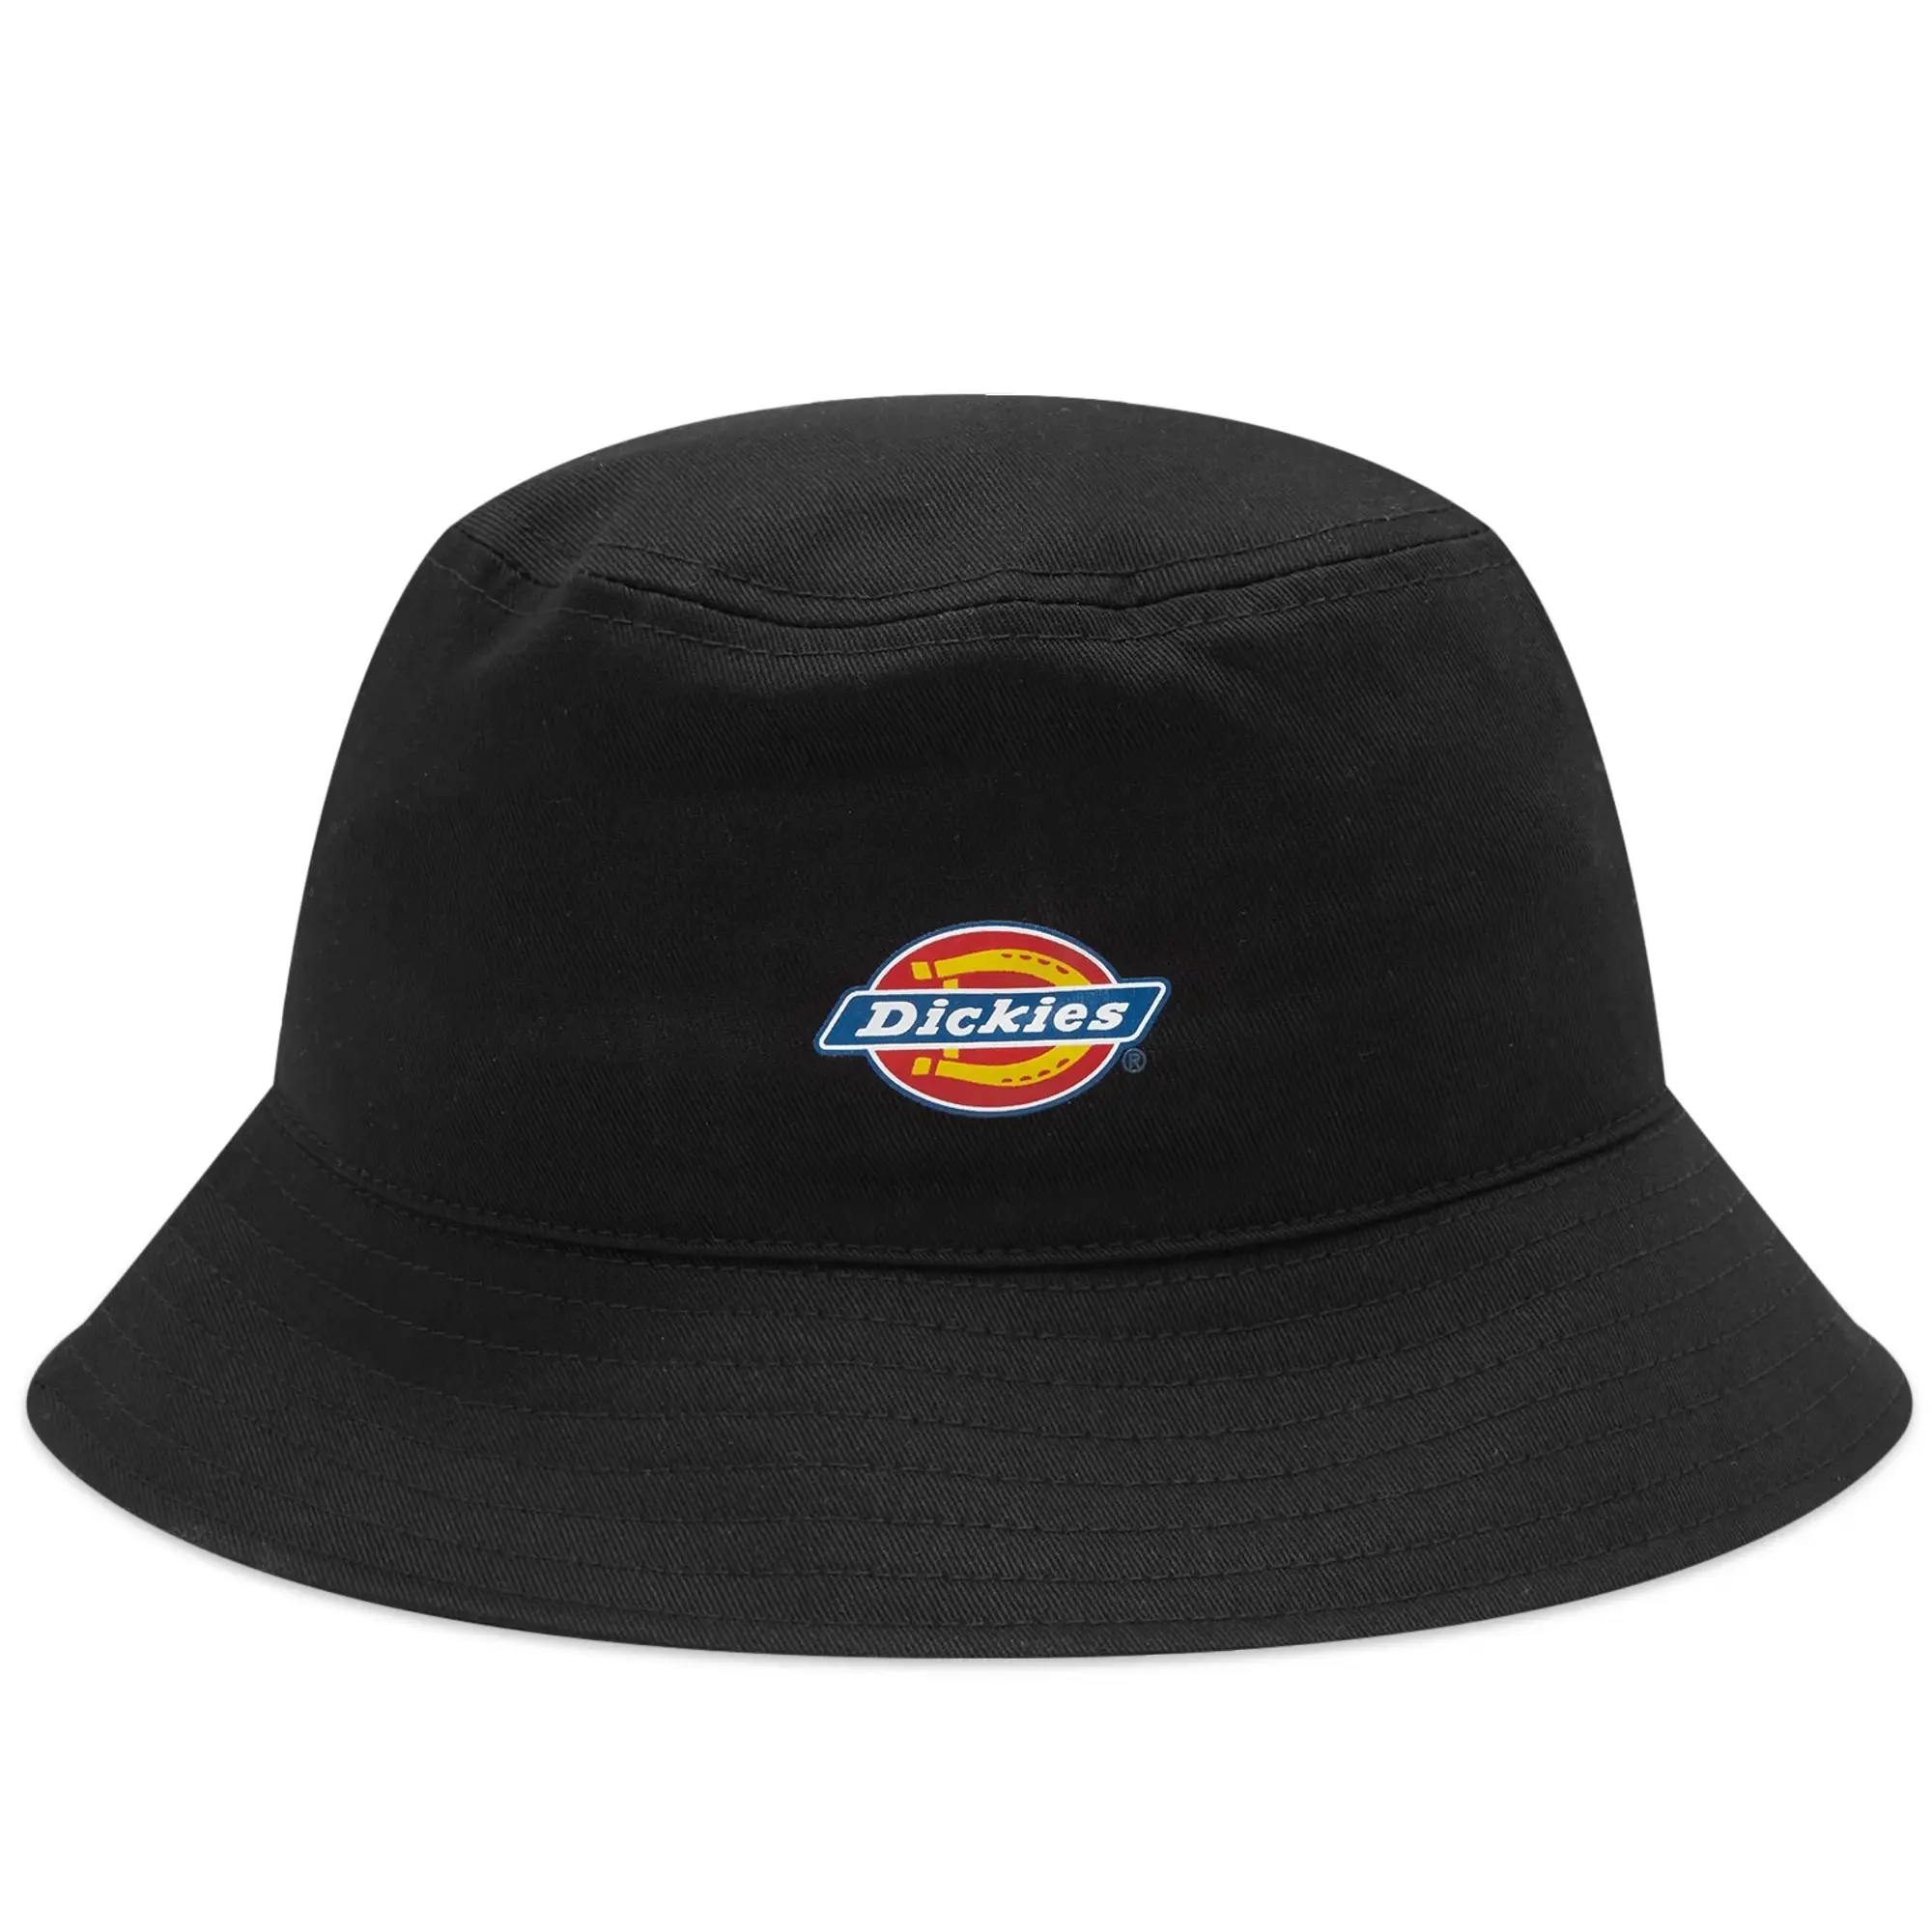 Dickies Men's Stayton Bucket Hat Black